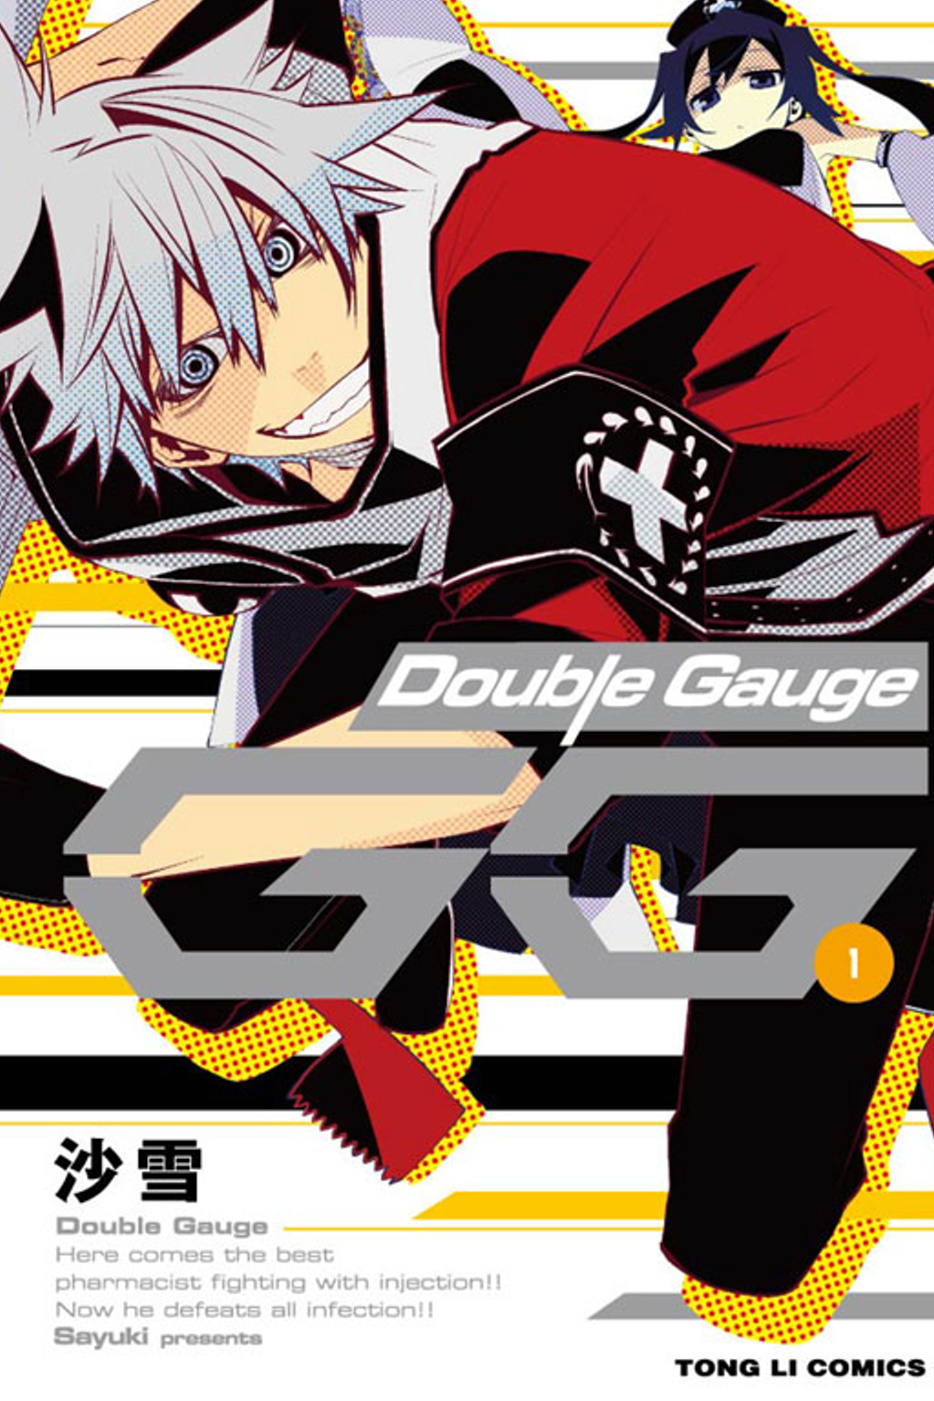 GG-Double Gauge 1